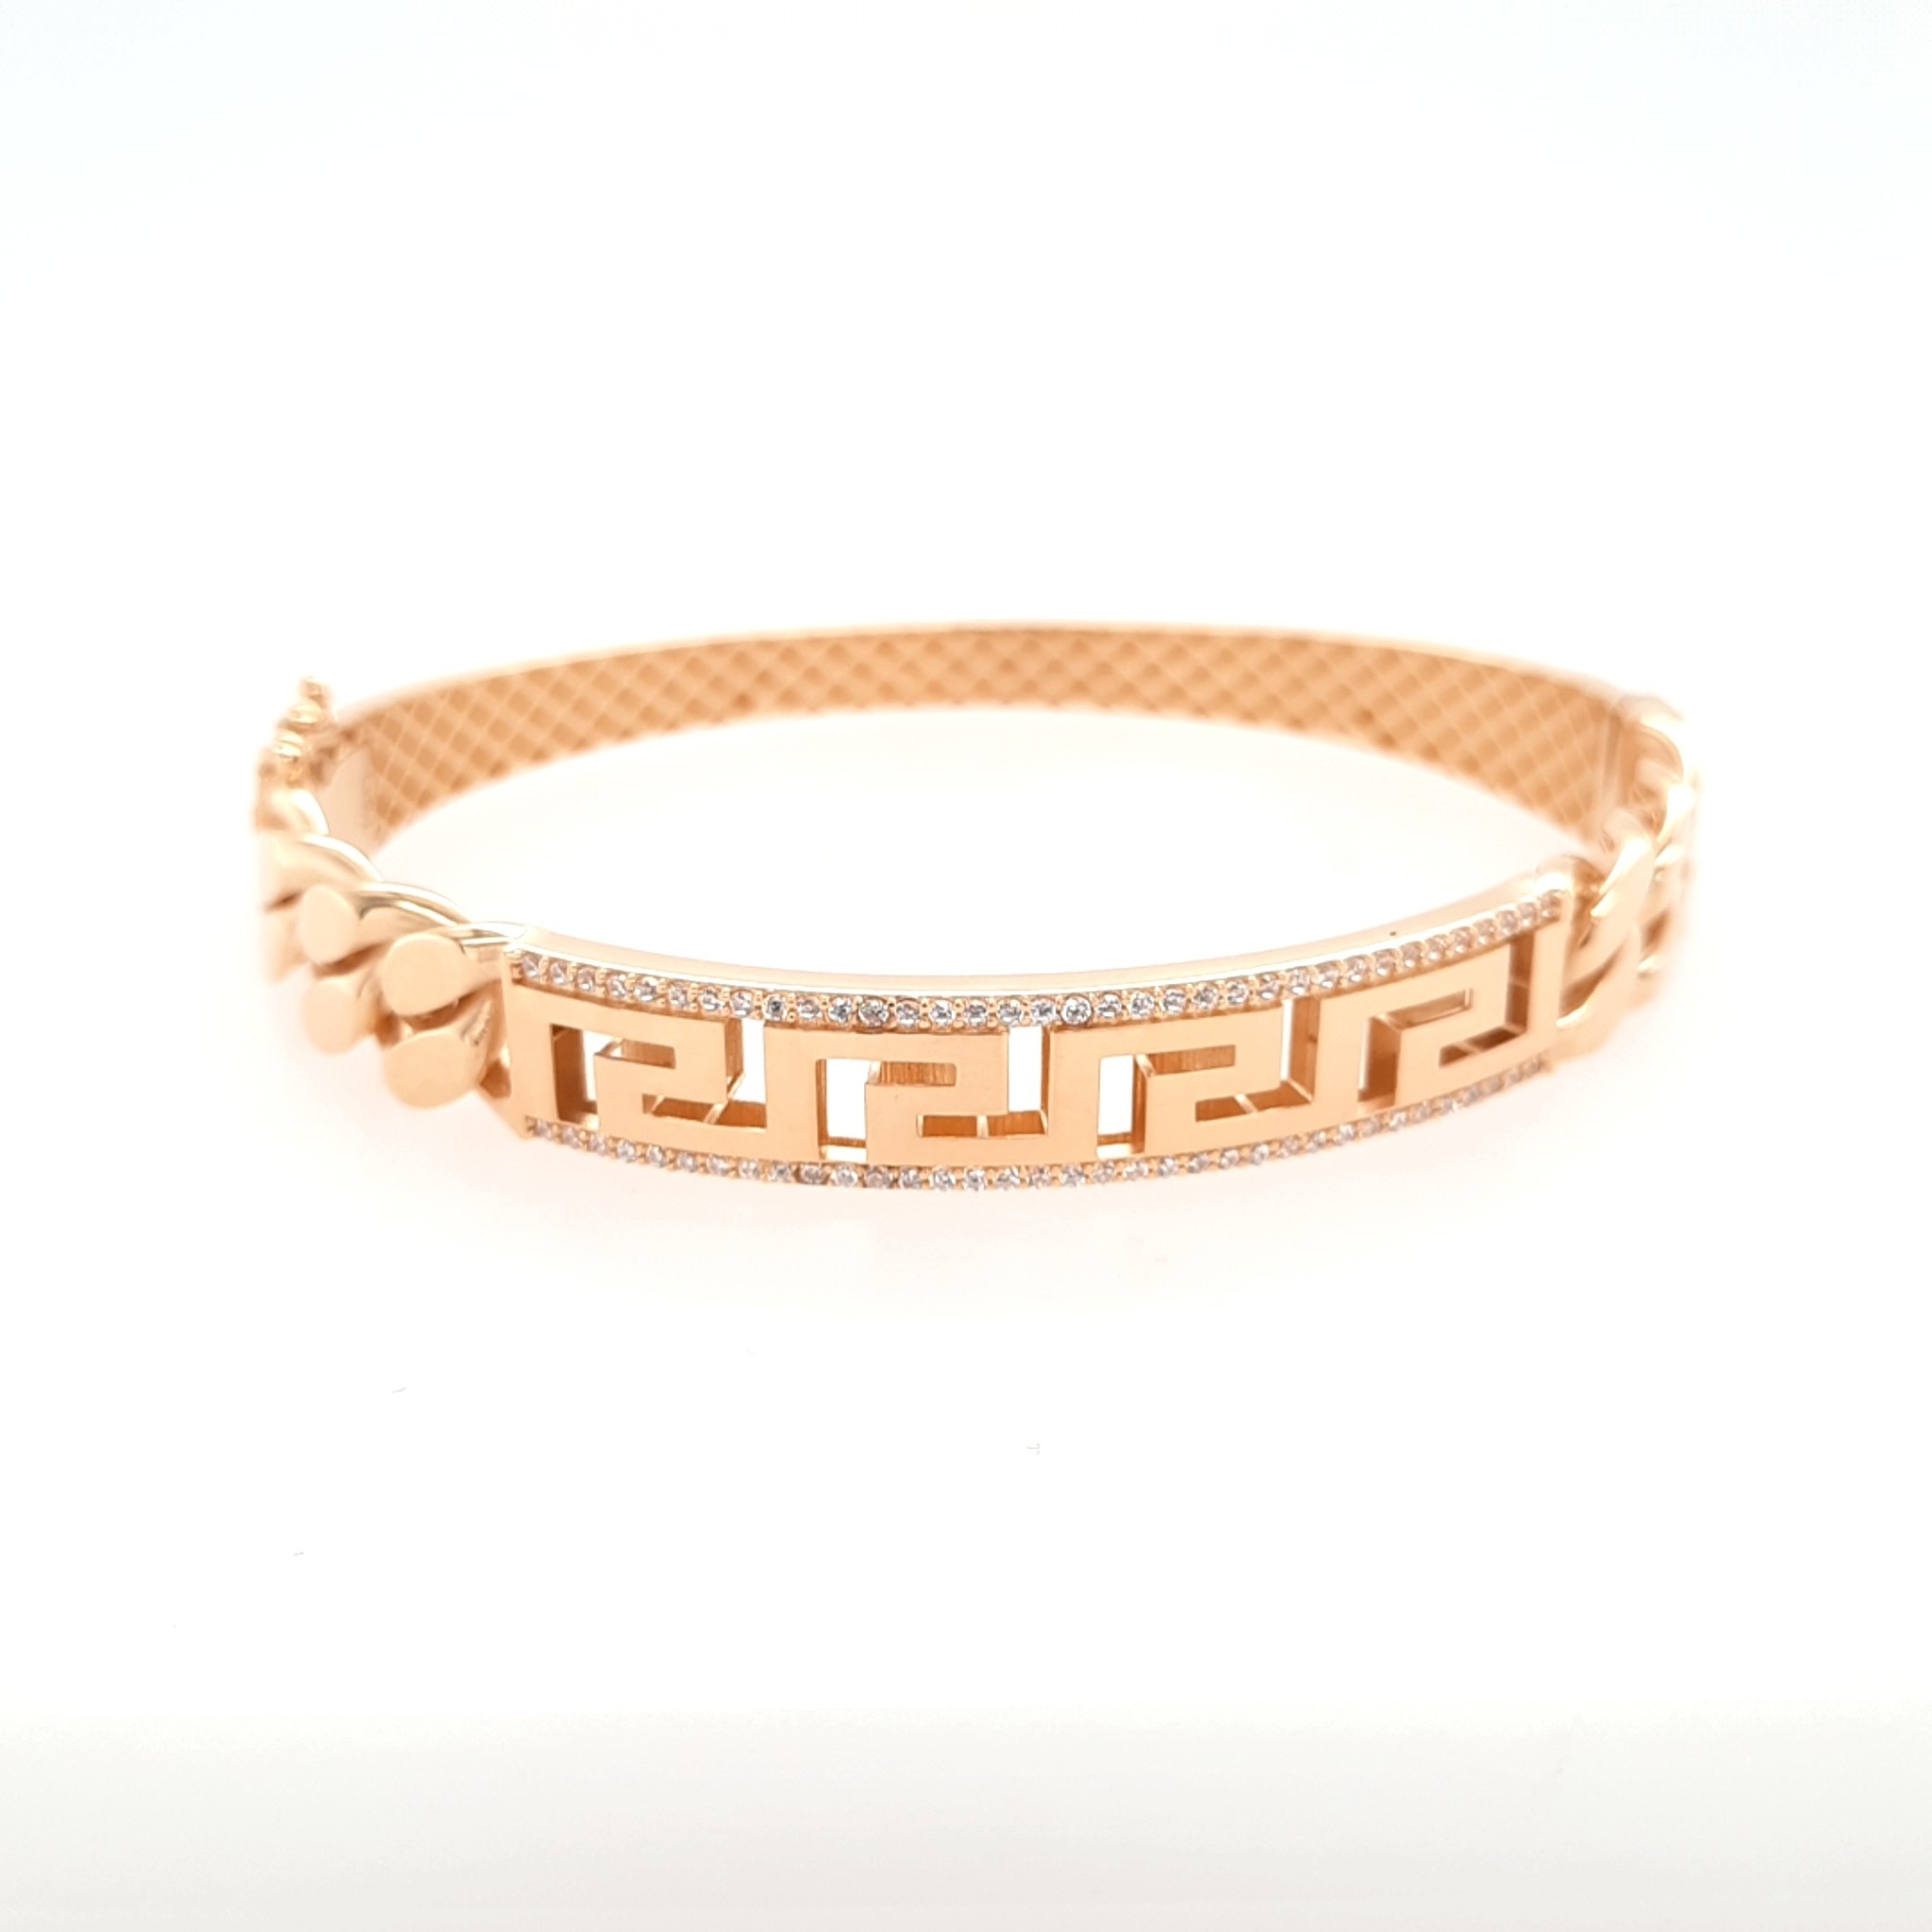 Dior Plan de Paris Bracelet Gold-Finish Metal and White Resin Pearls |  Paris bracelet, Paris charm bracelet, Dior bracelets